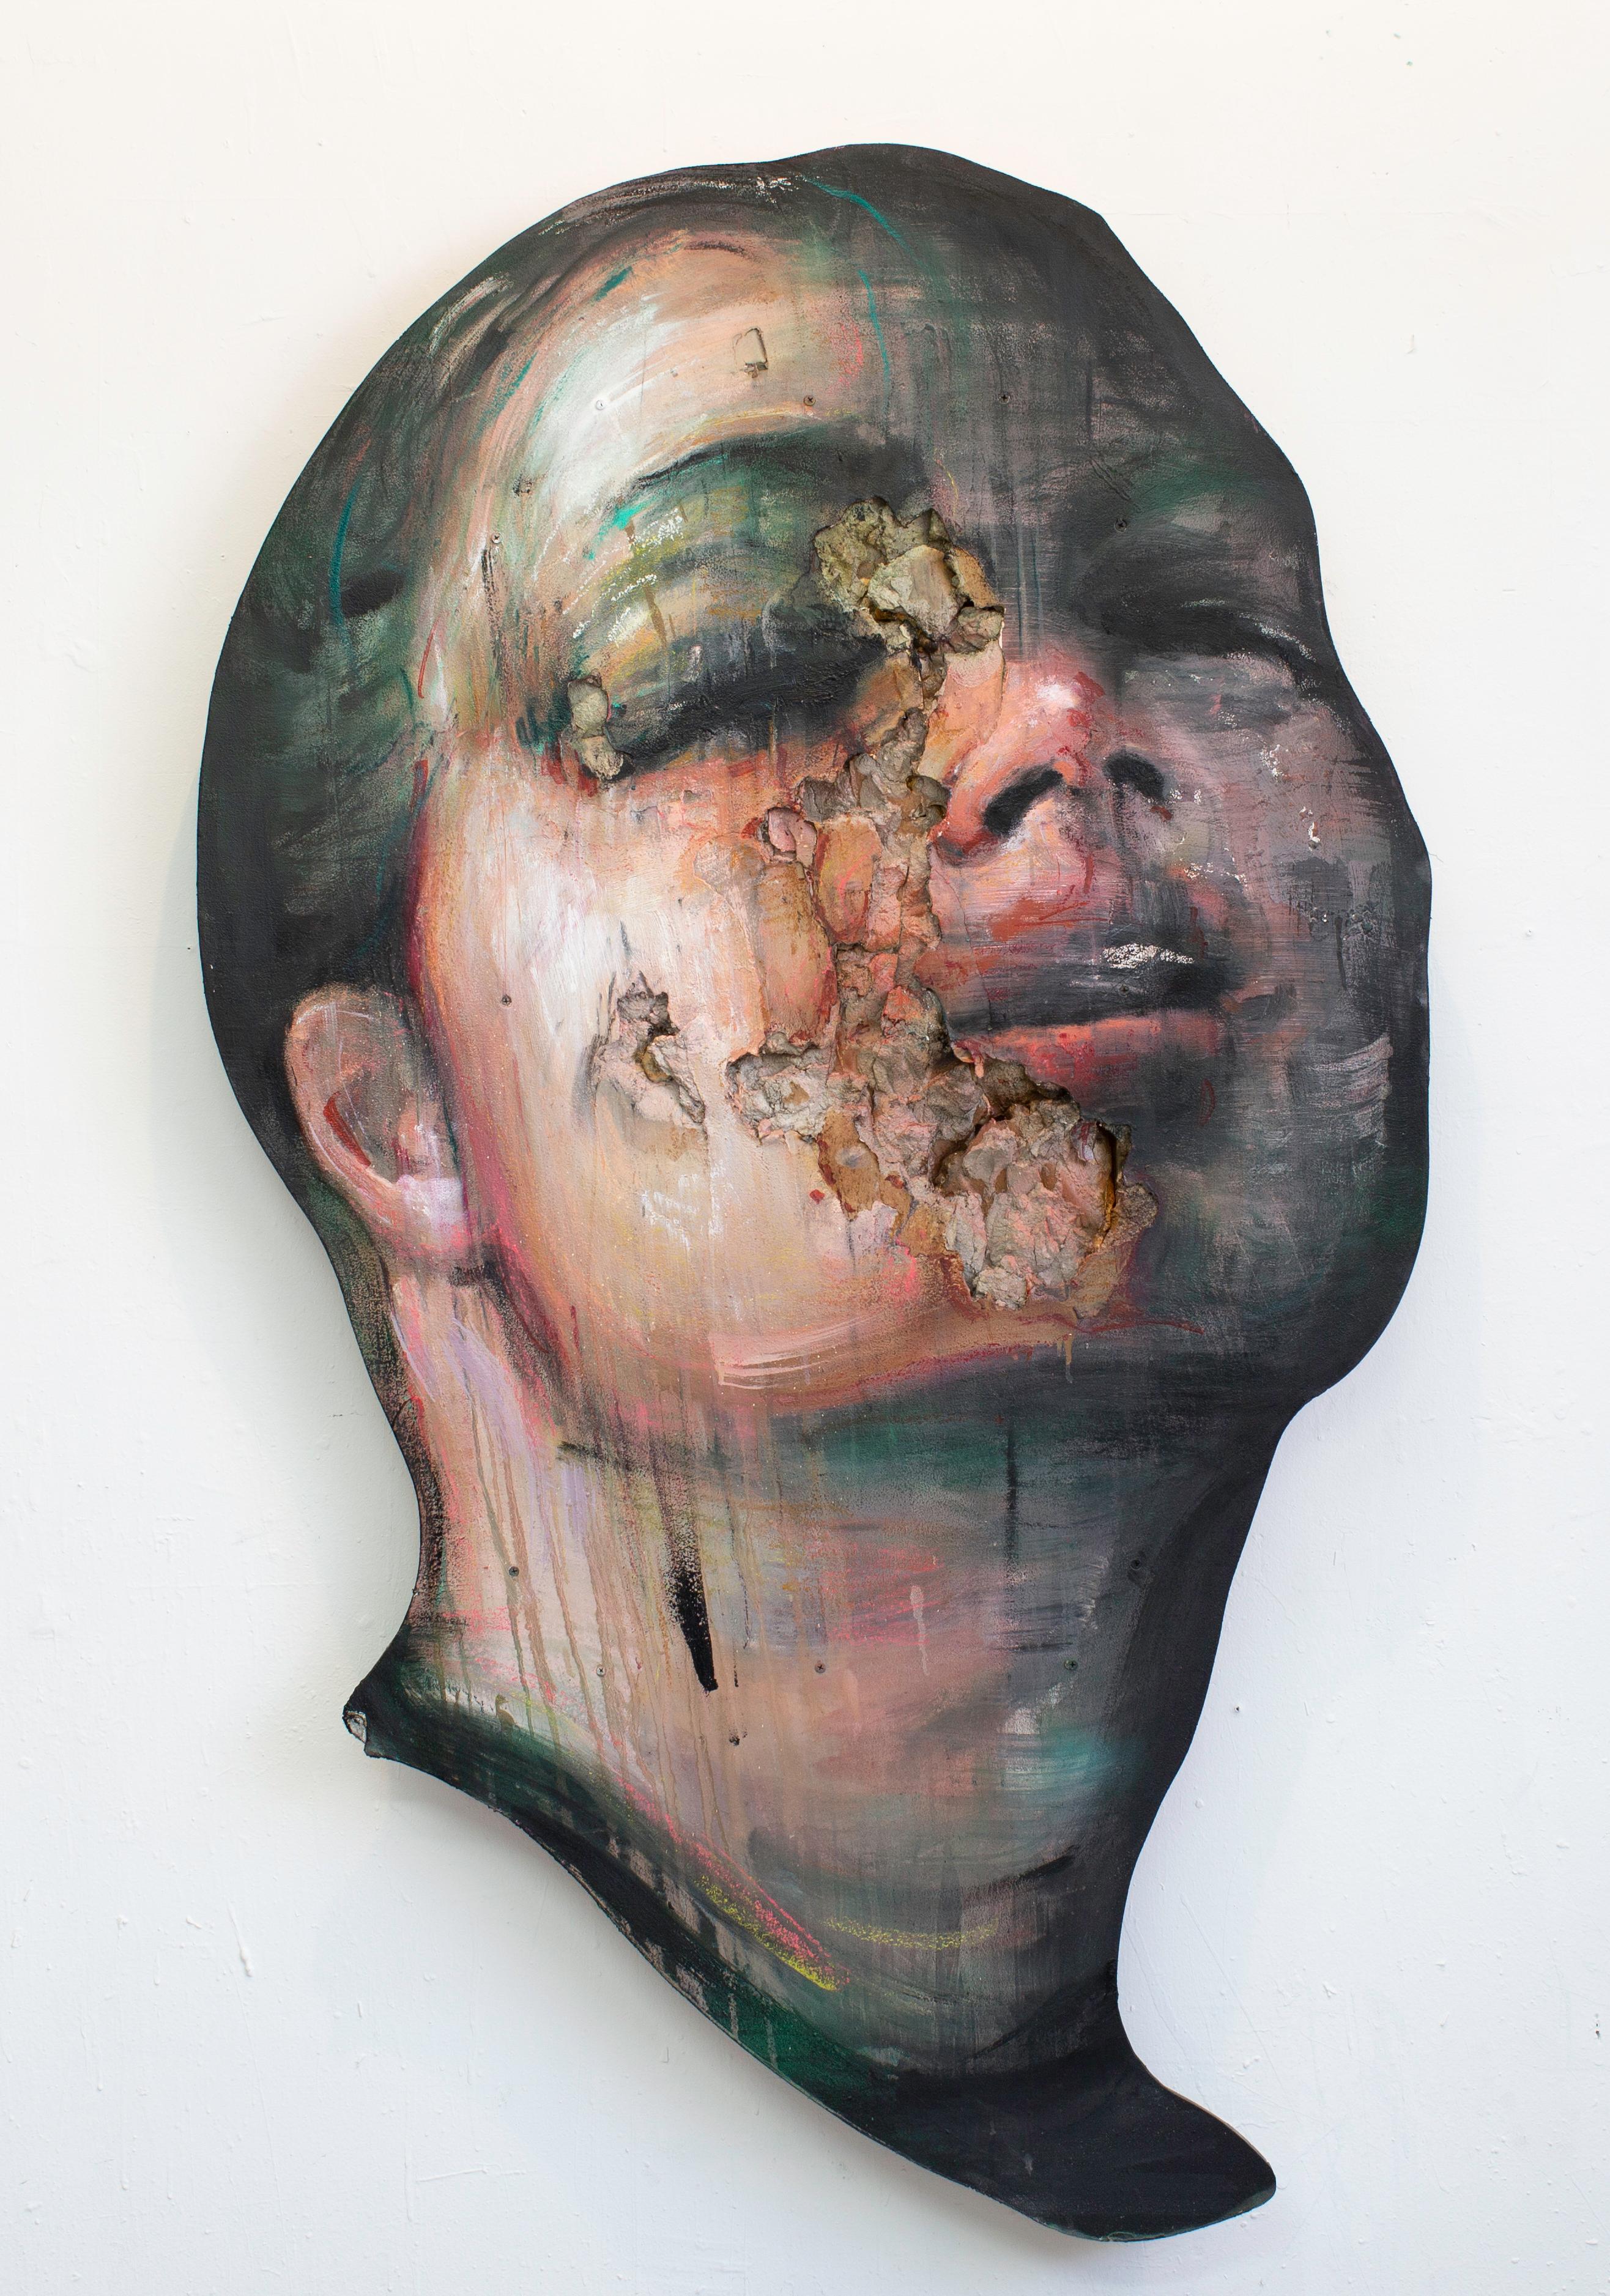 Juan Miguel Palacios Portrait Painting - 3D Portrait of Woman: 'The Wanders I'